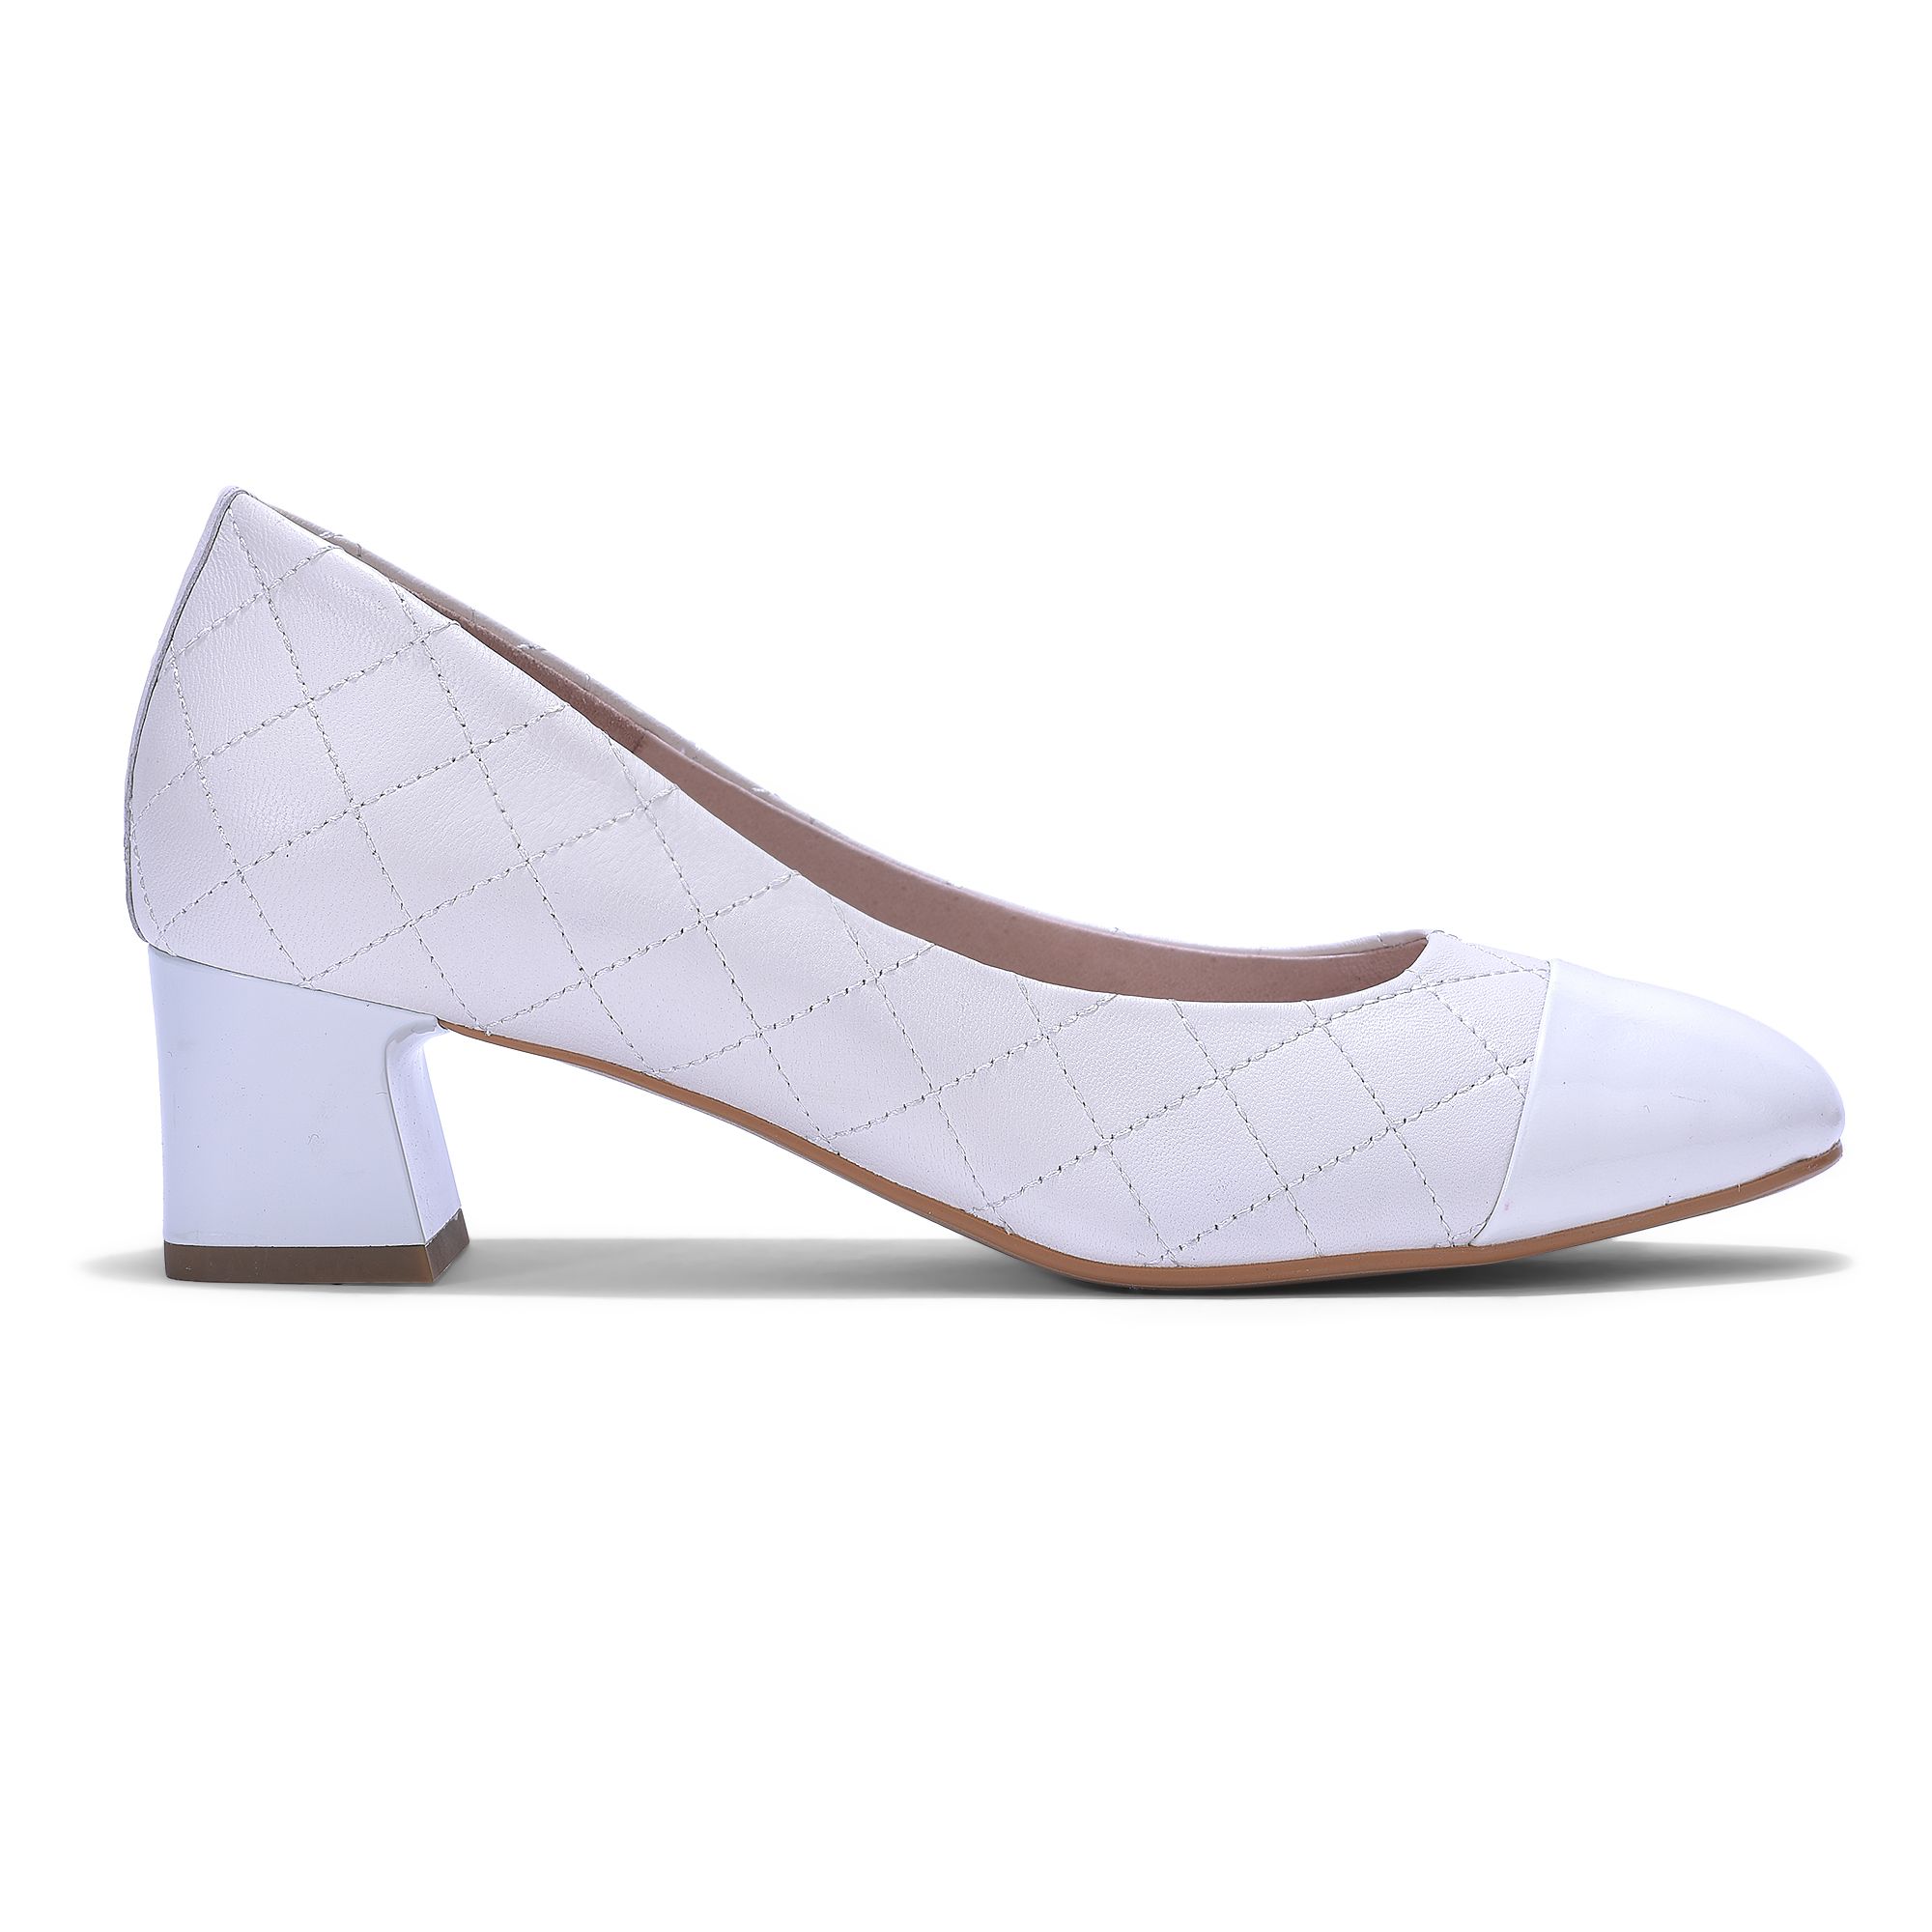 Buy Inc.5 Solid White Block Heels Online